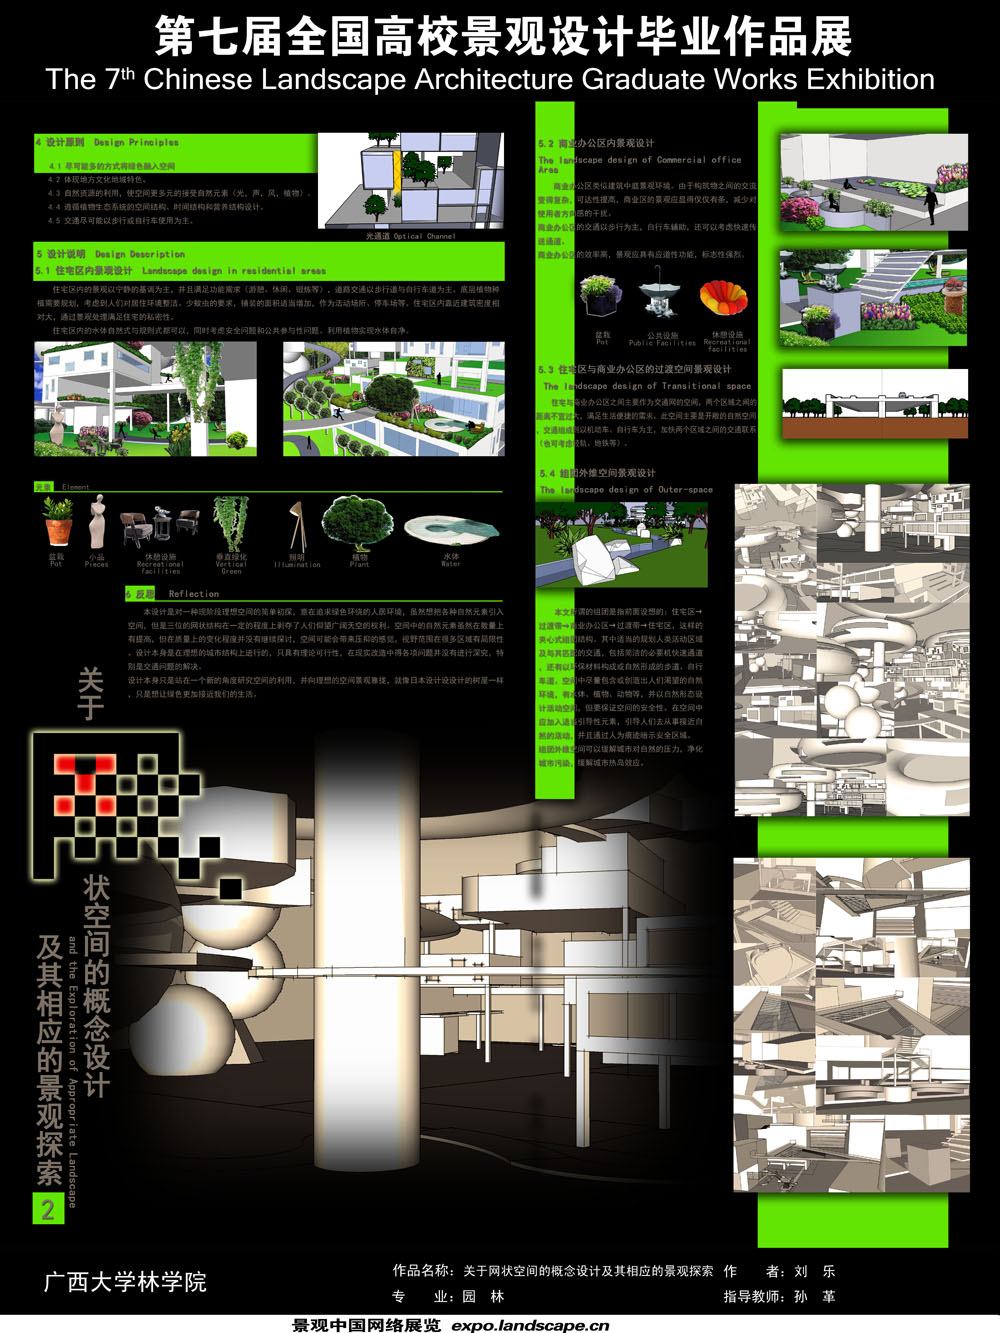 关于网状空间的概念设计及其相应的景观探索-2